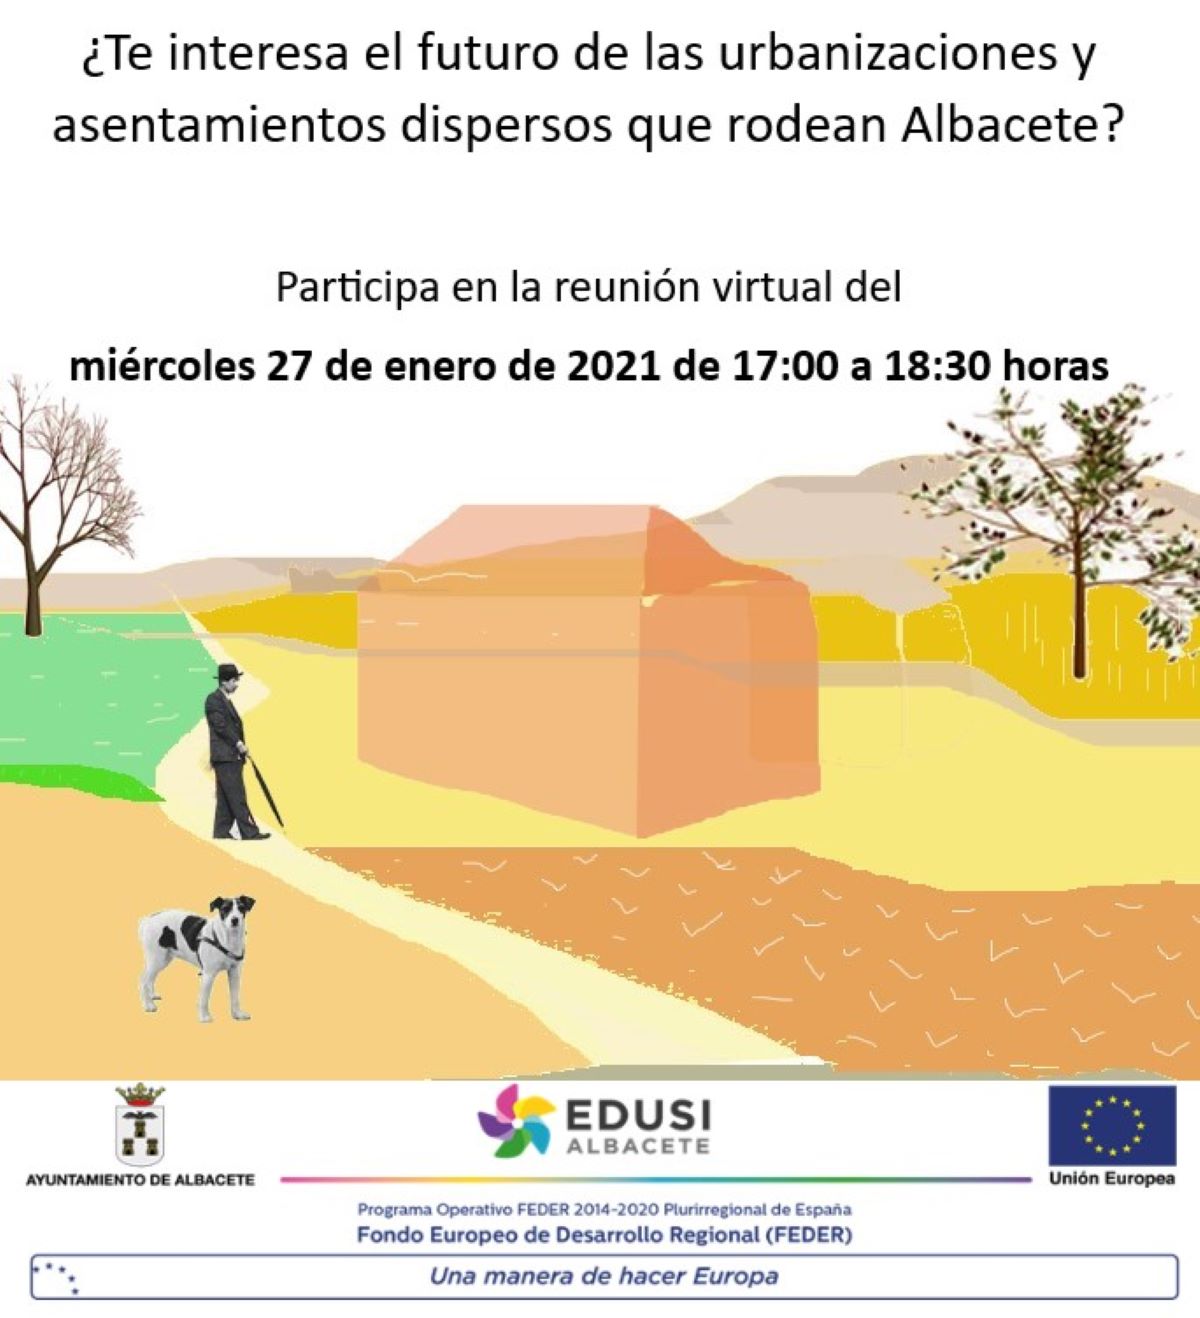 Nuevo estudio para integrar y conectar las urbanizaciones dispersas con el casco urbano de Albacete